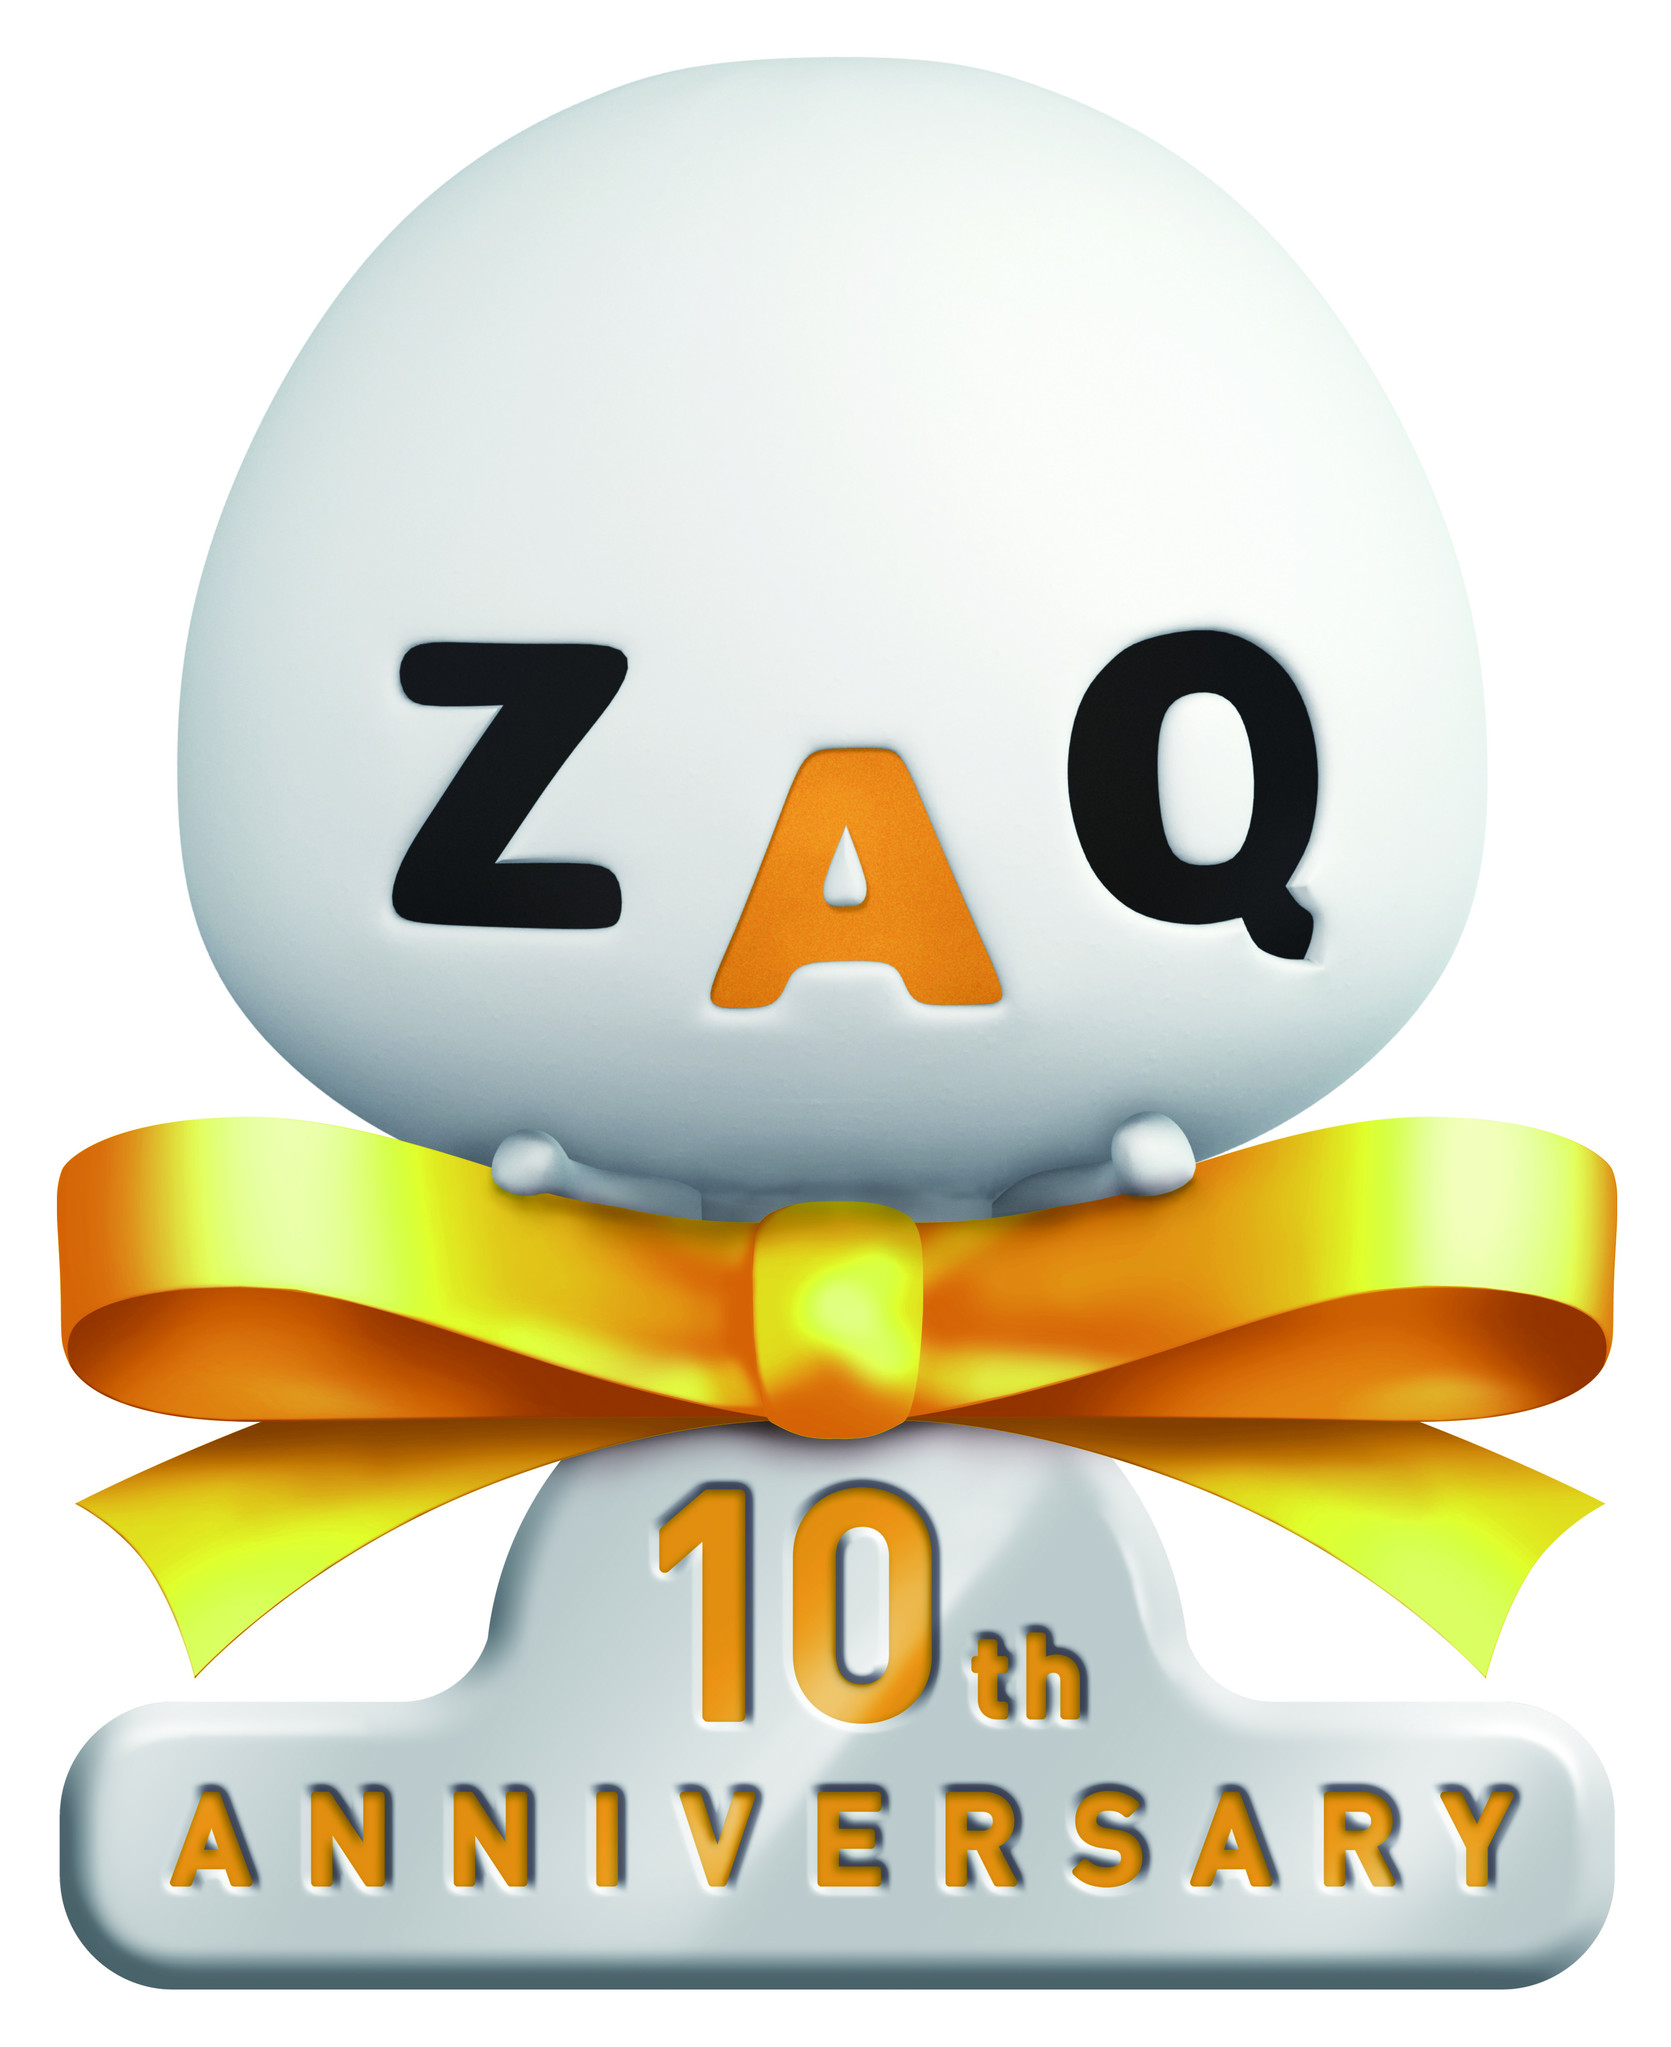 ケーブルインターネットzaqのキャラクター ざっくぅ 誕生10年を記念して プレゼントキャンペーンとアニバーサリーイベントを開催 株式会社テクノロジーネットワークスのプレスリリース